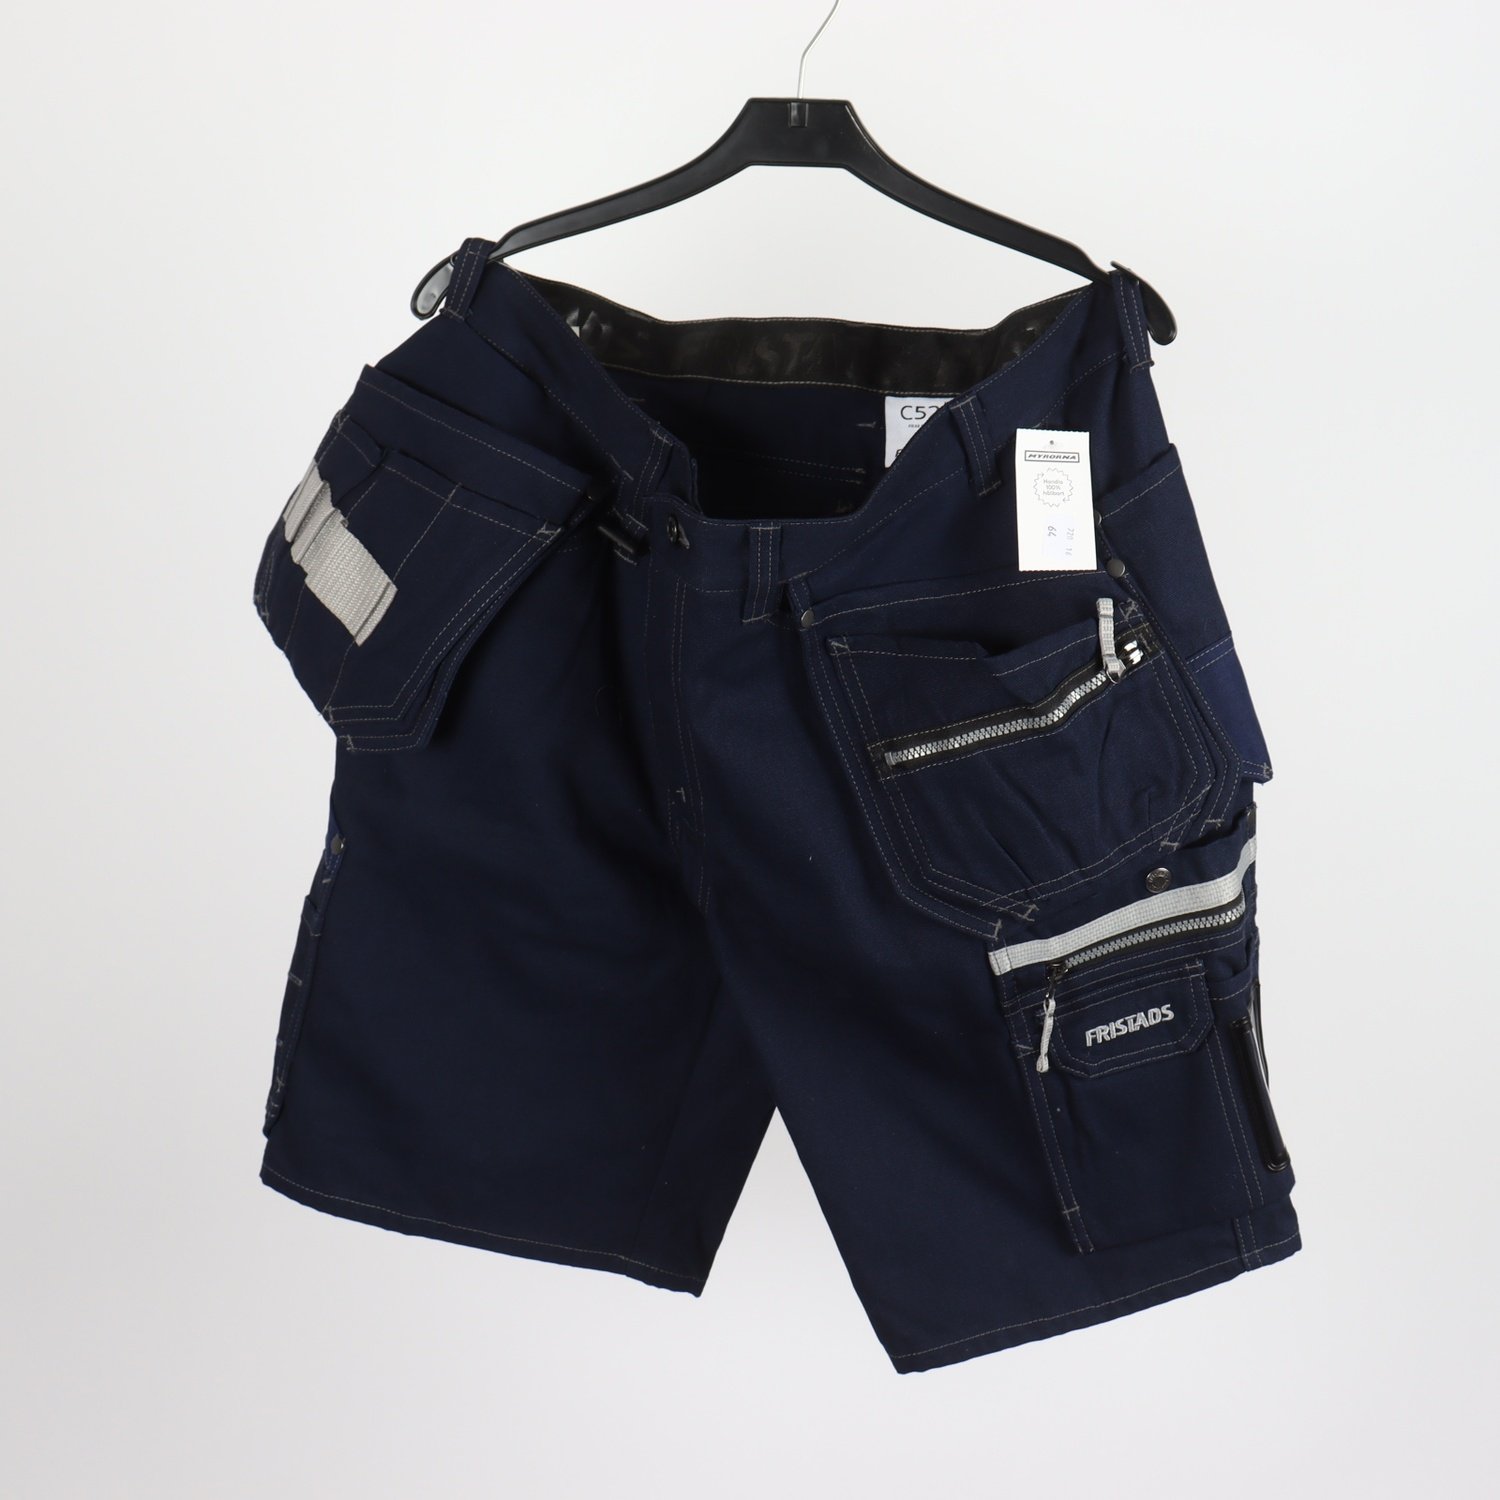 Shorts, Fristads, blå, stl. 52